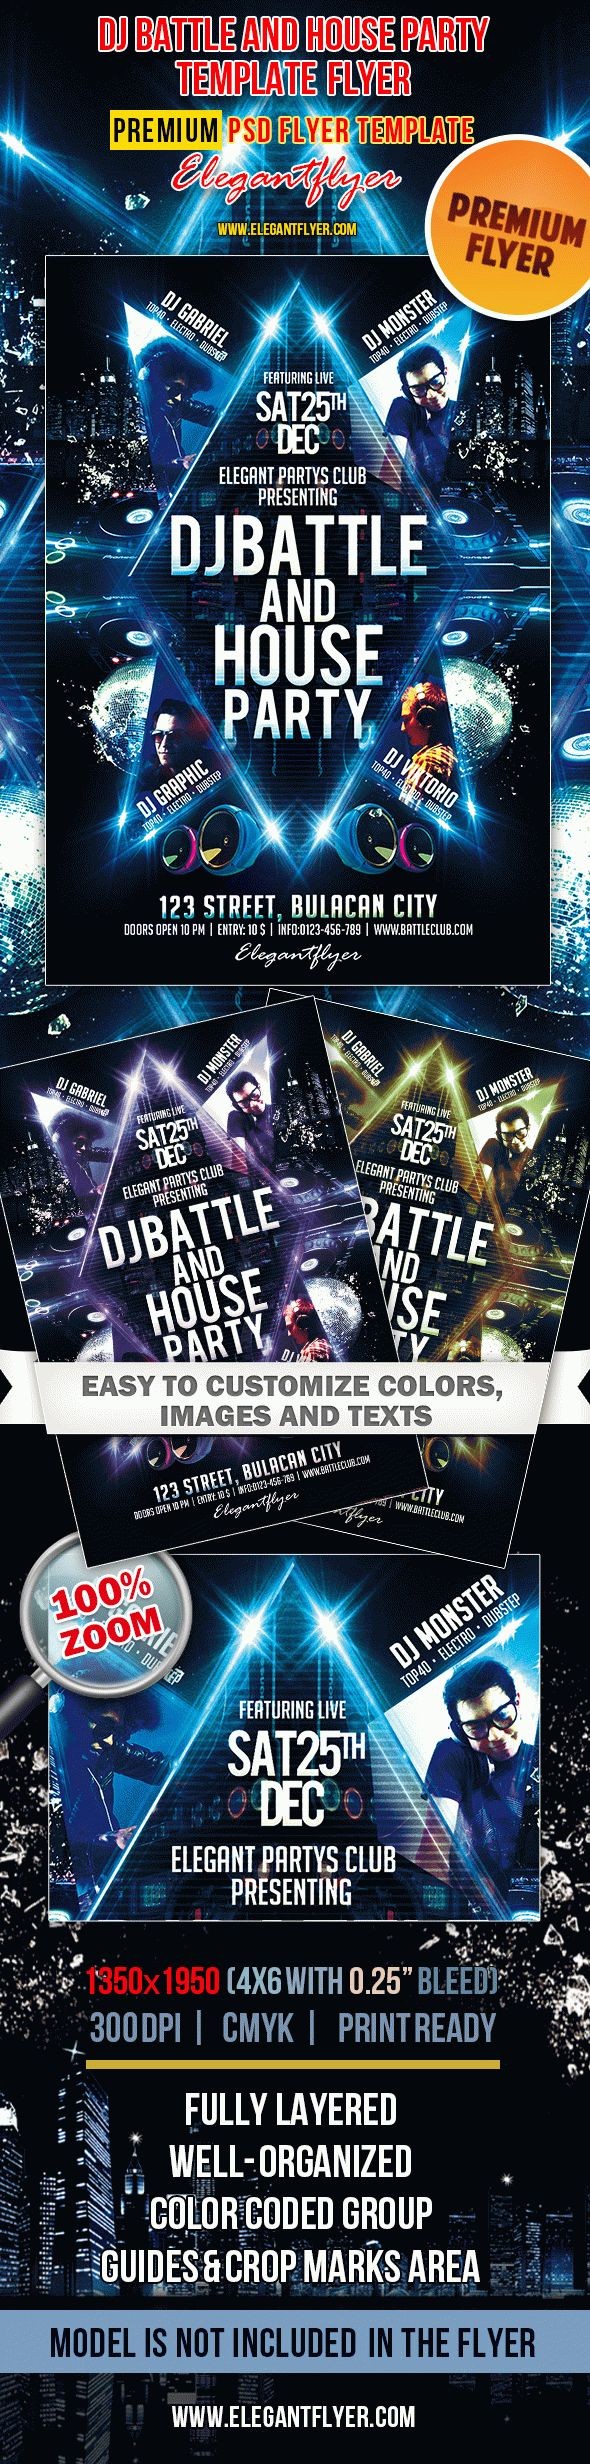 Dj Battle et House Party by ElegantFlyer